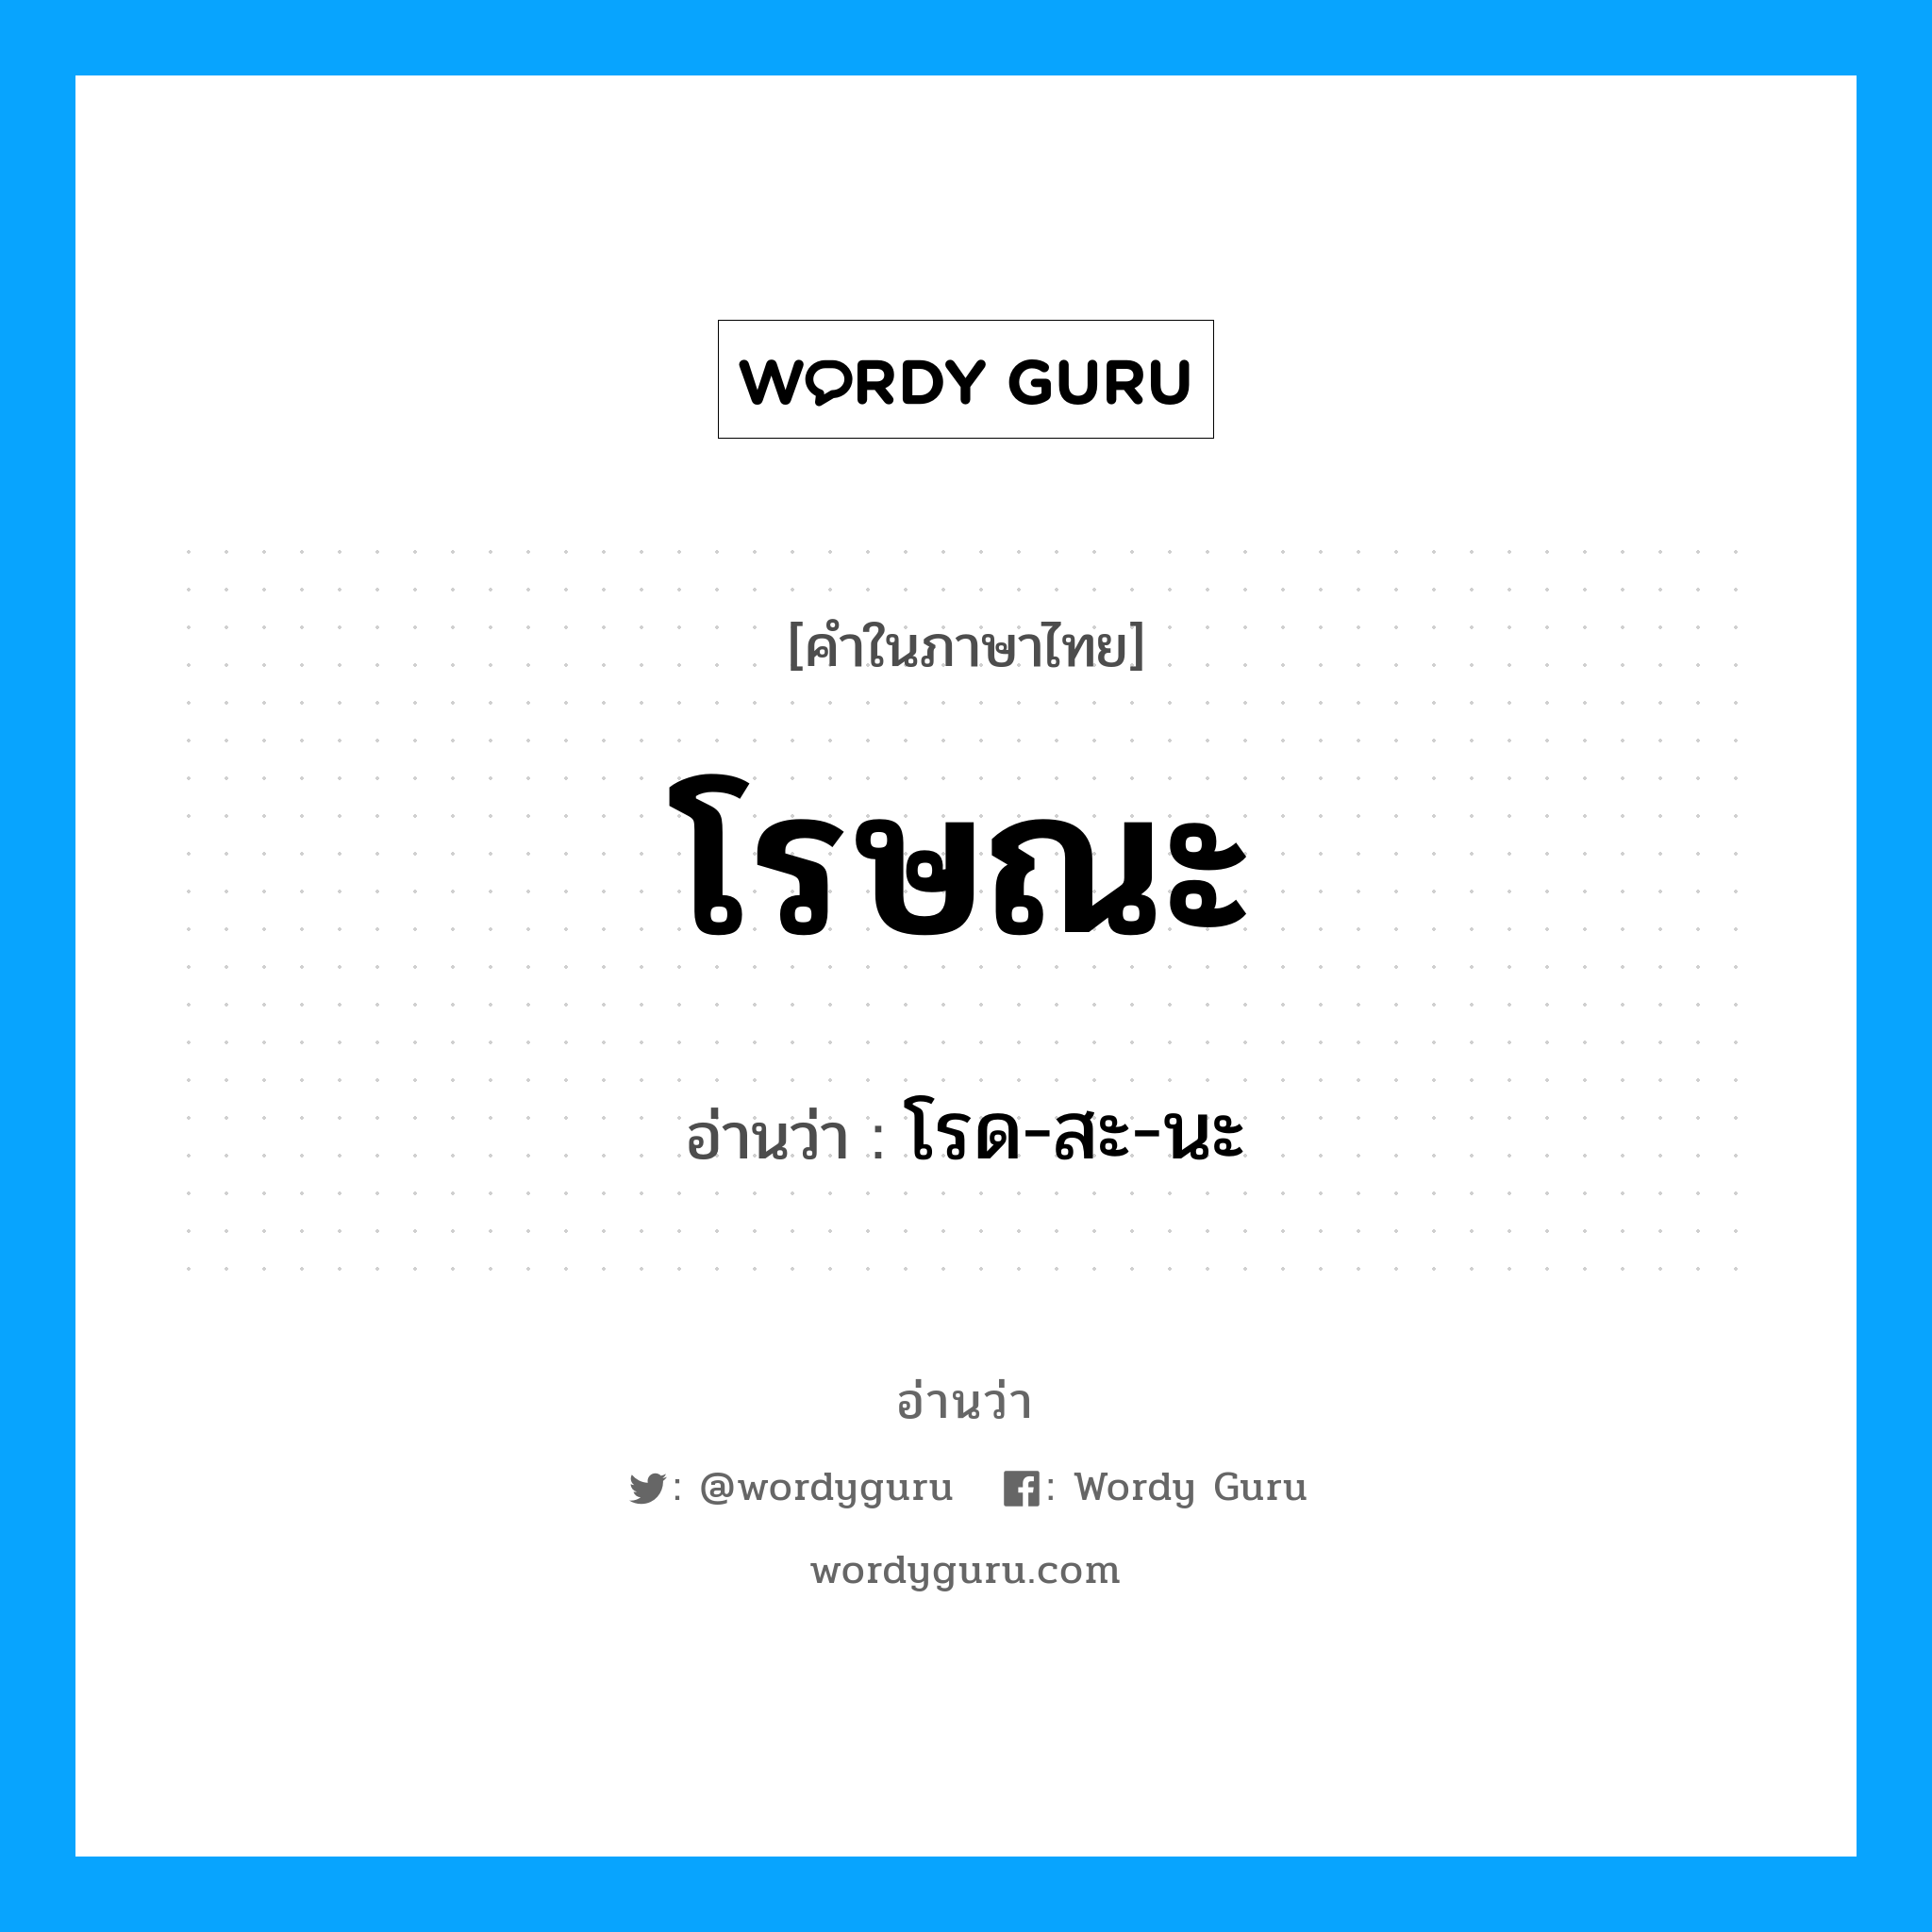 โรด-สะ-นะ เป็นคำอ่านของคำไหน?, คำในภาษาไทย โรด-สะ-นะ อ่านว่า โรษณะ